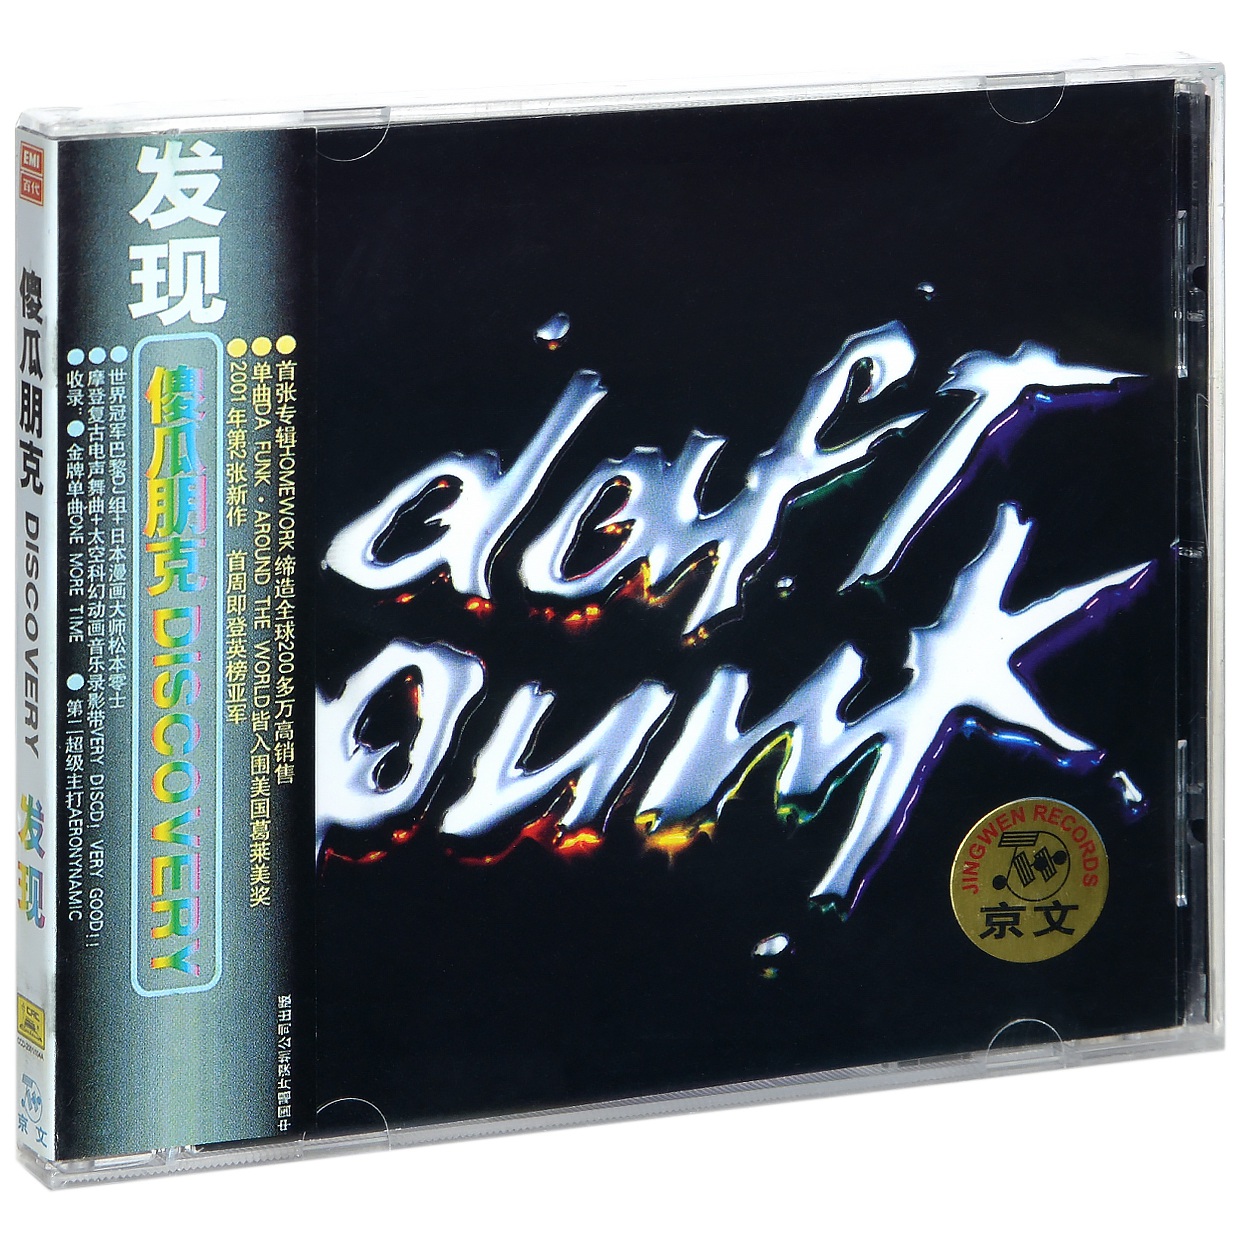 正版蠢朋克乐队专辑 傻瓜朋克 发现 Daft Punk Discovery CD碟片 音乐/影视/明星/音像 音乐CD/DVD 原图主图